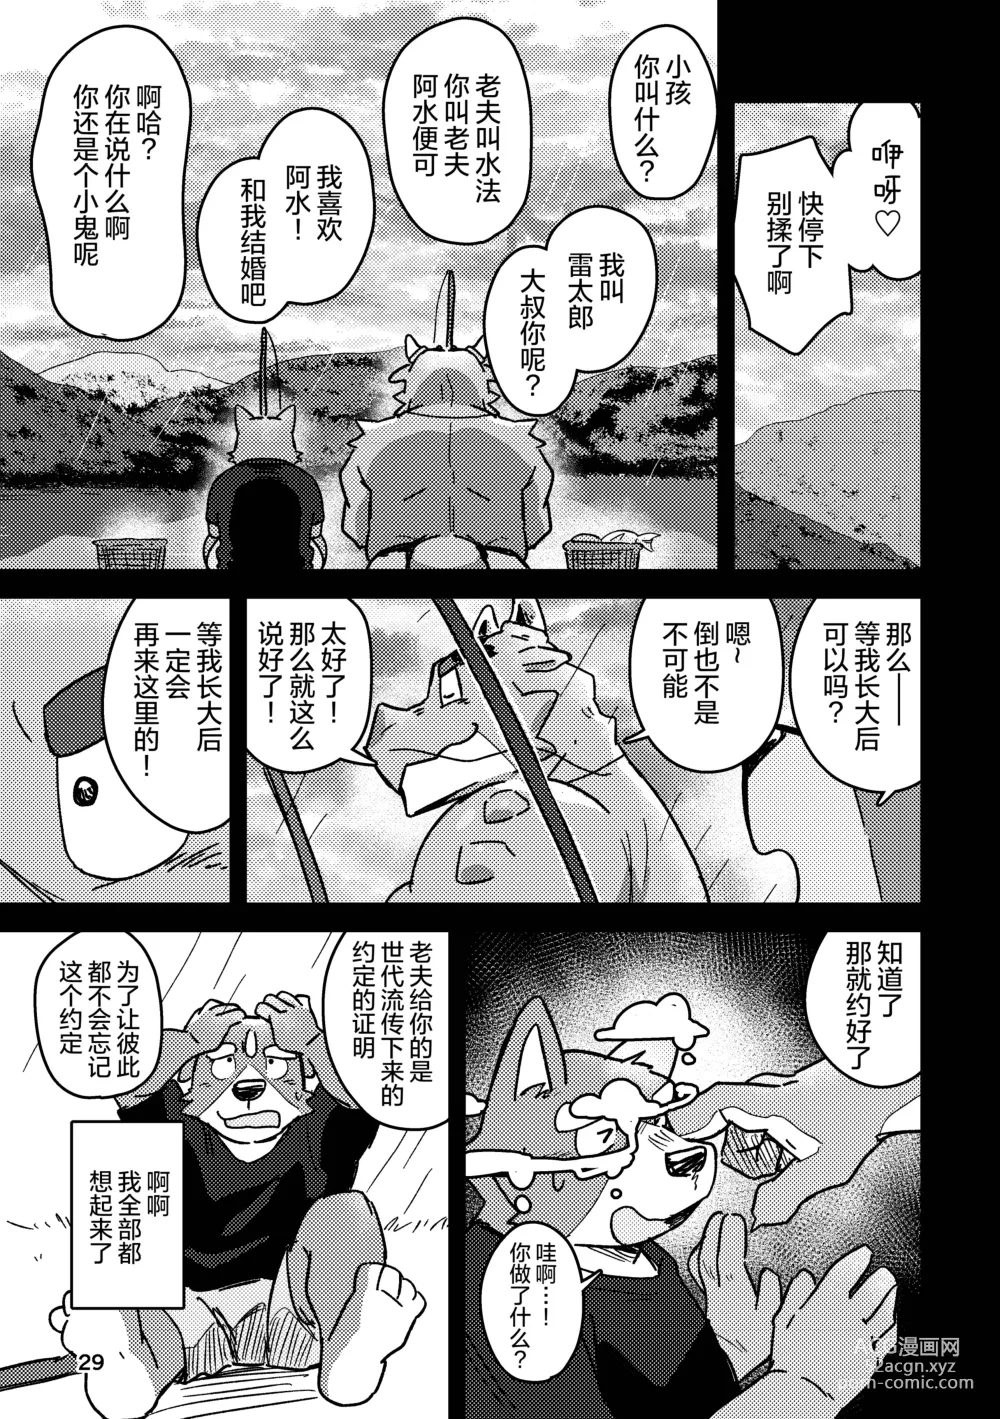 Page 29 of doujinshi 约定的龙穴